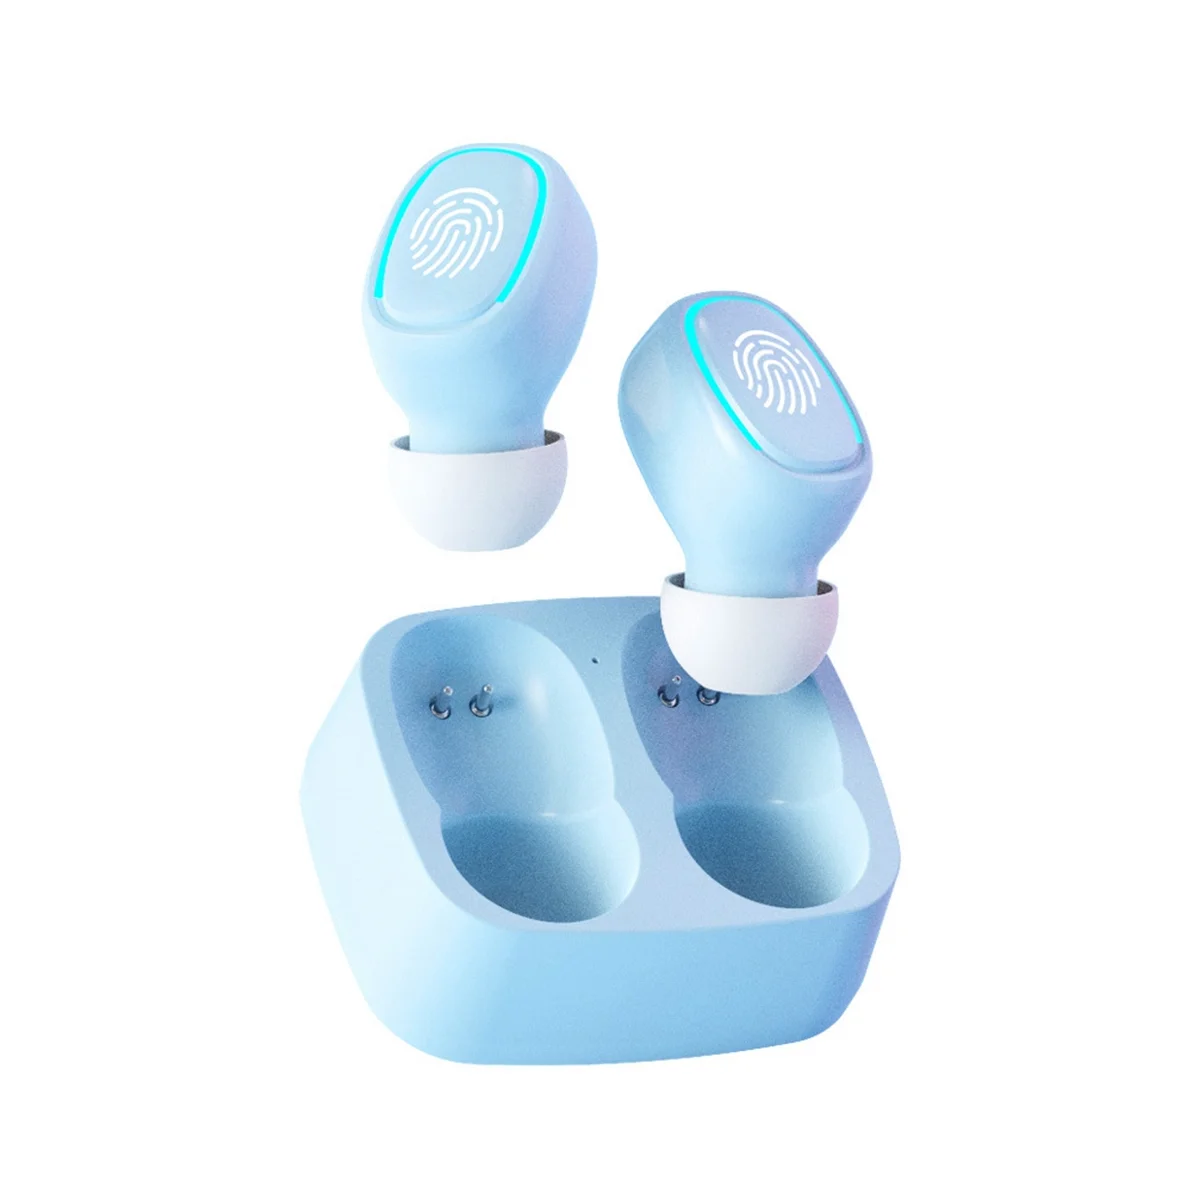 Мини-беспроводная Bluetooth-гарнитура, сенсорная подсветка, затычки для ушей, защита от пота, стереогарнитура высокого качества, универсальная, зеленая